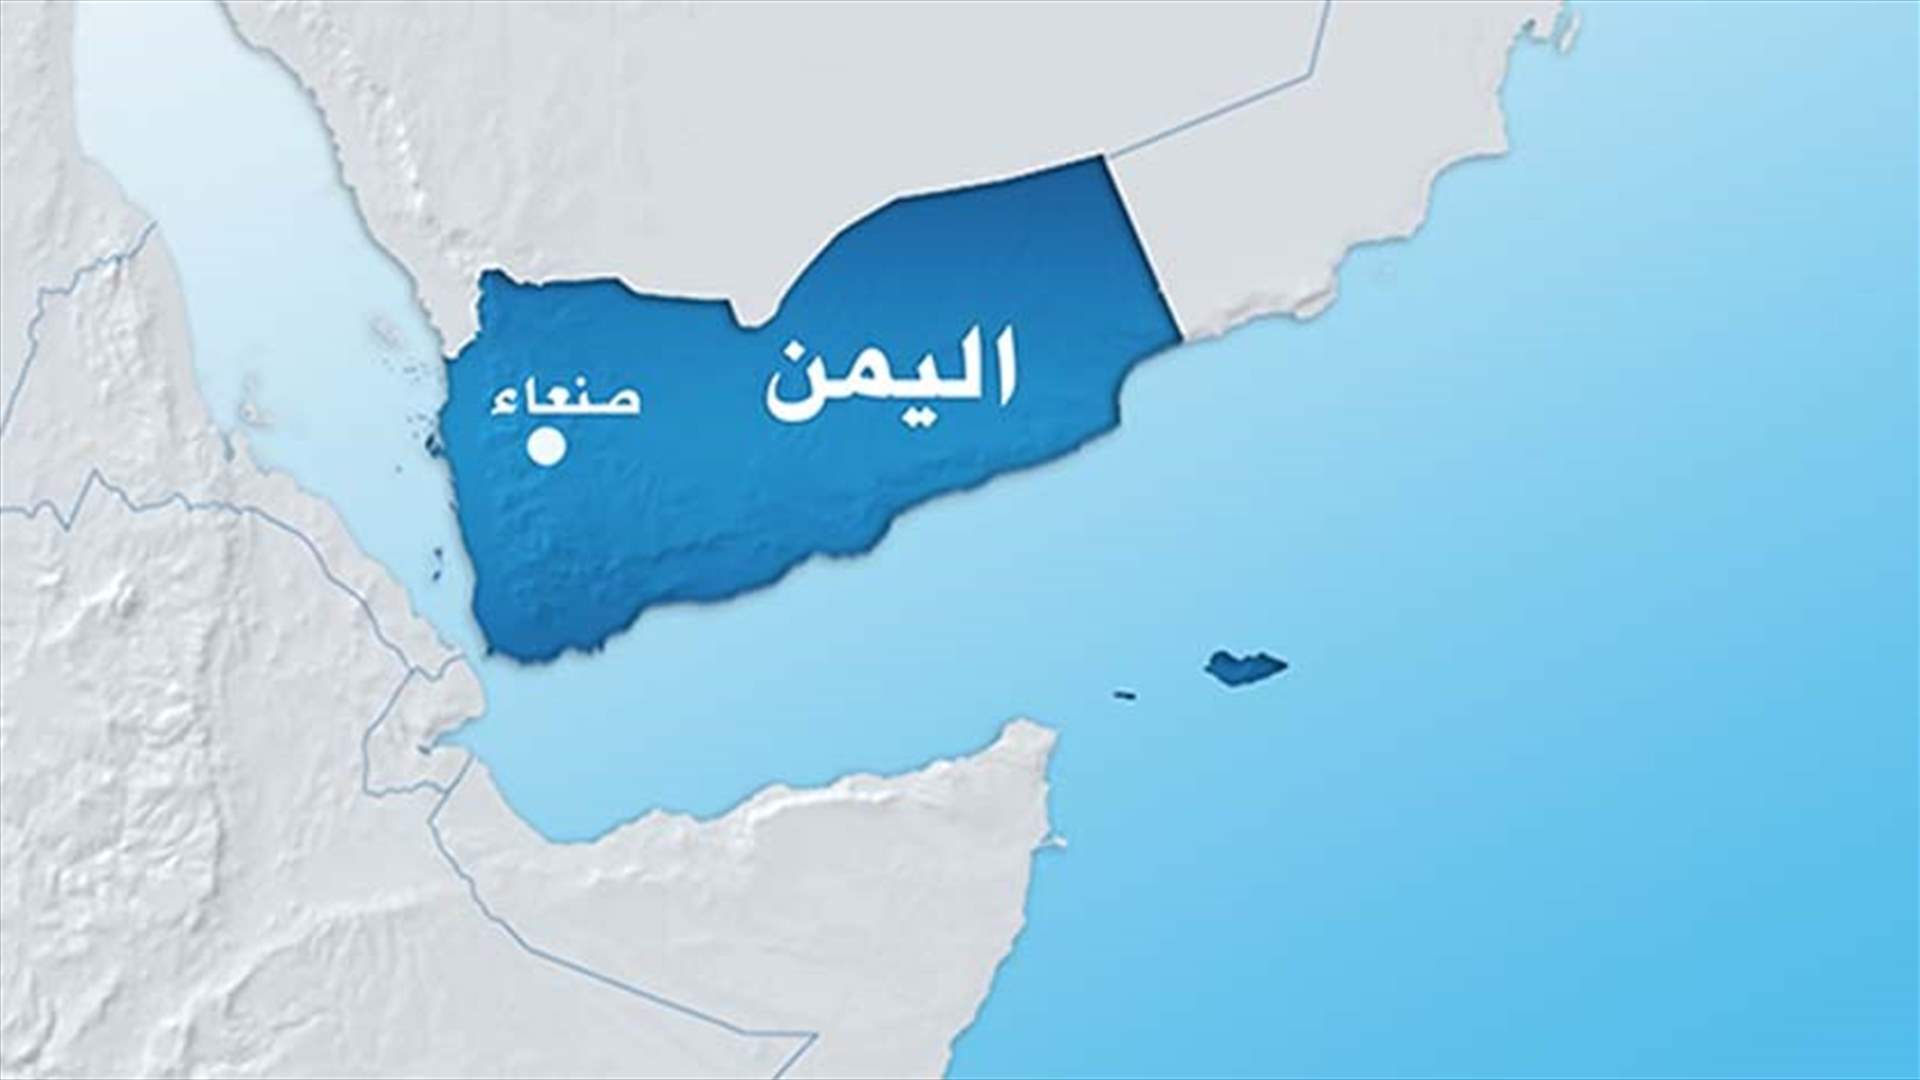 اليمن تدعو الامم المتحدة للتدخل بعد مقتل مدنيين في تعز